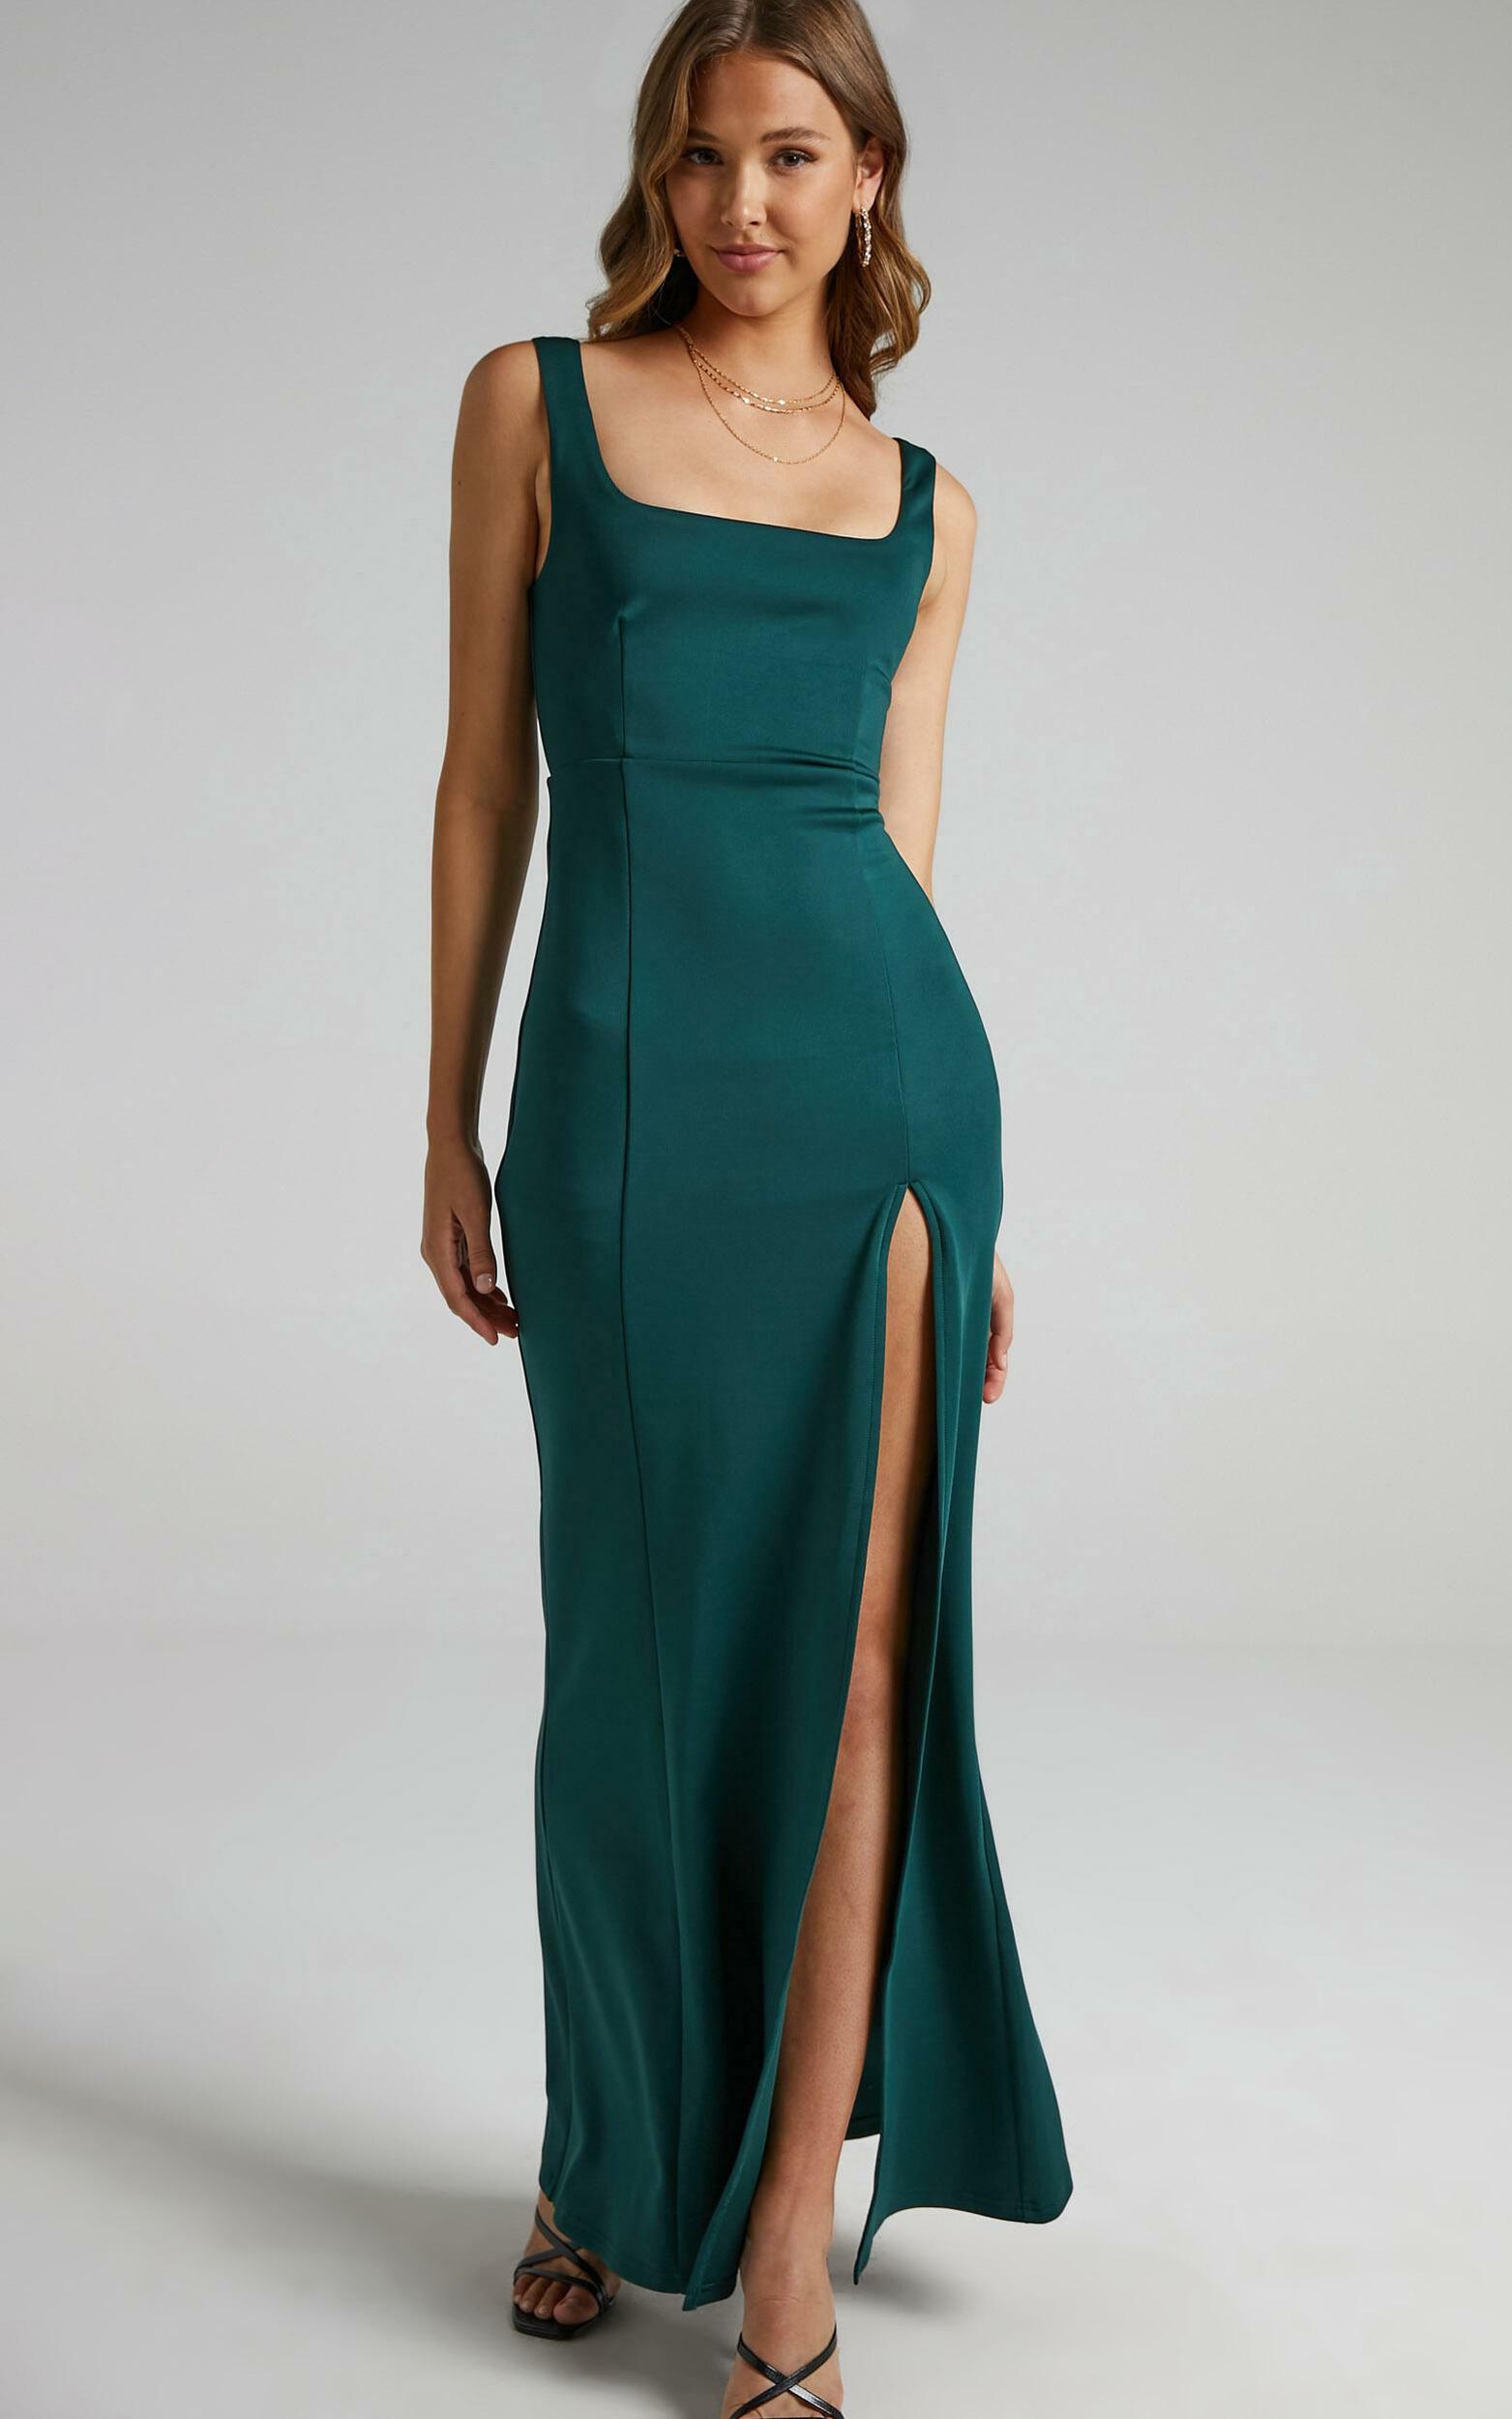 Raquelle Square Neck Thigh Split Maxi Dress in Emerald | Showpo USA